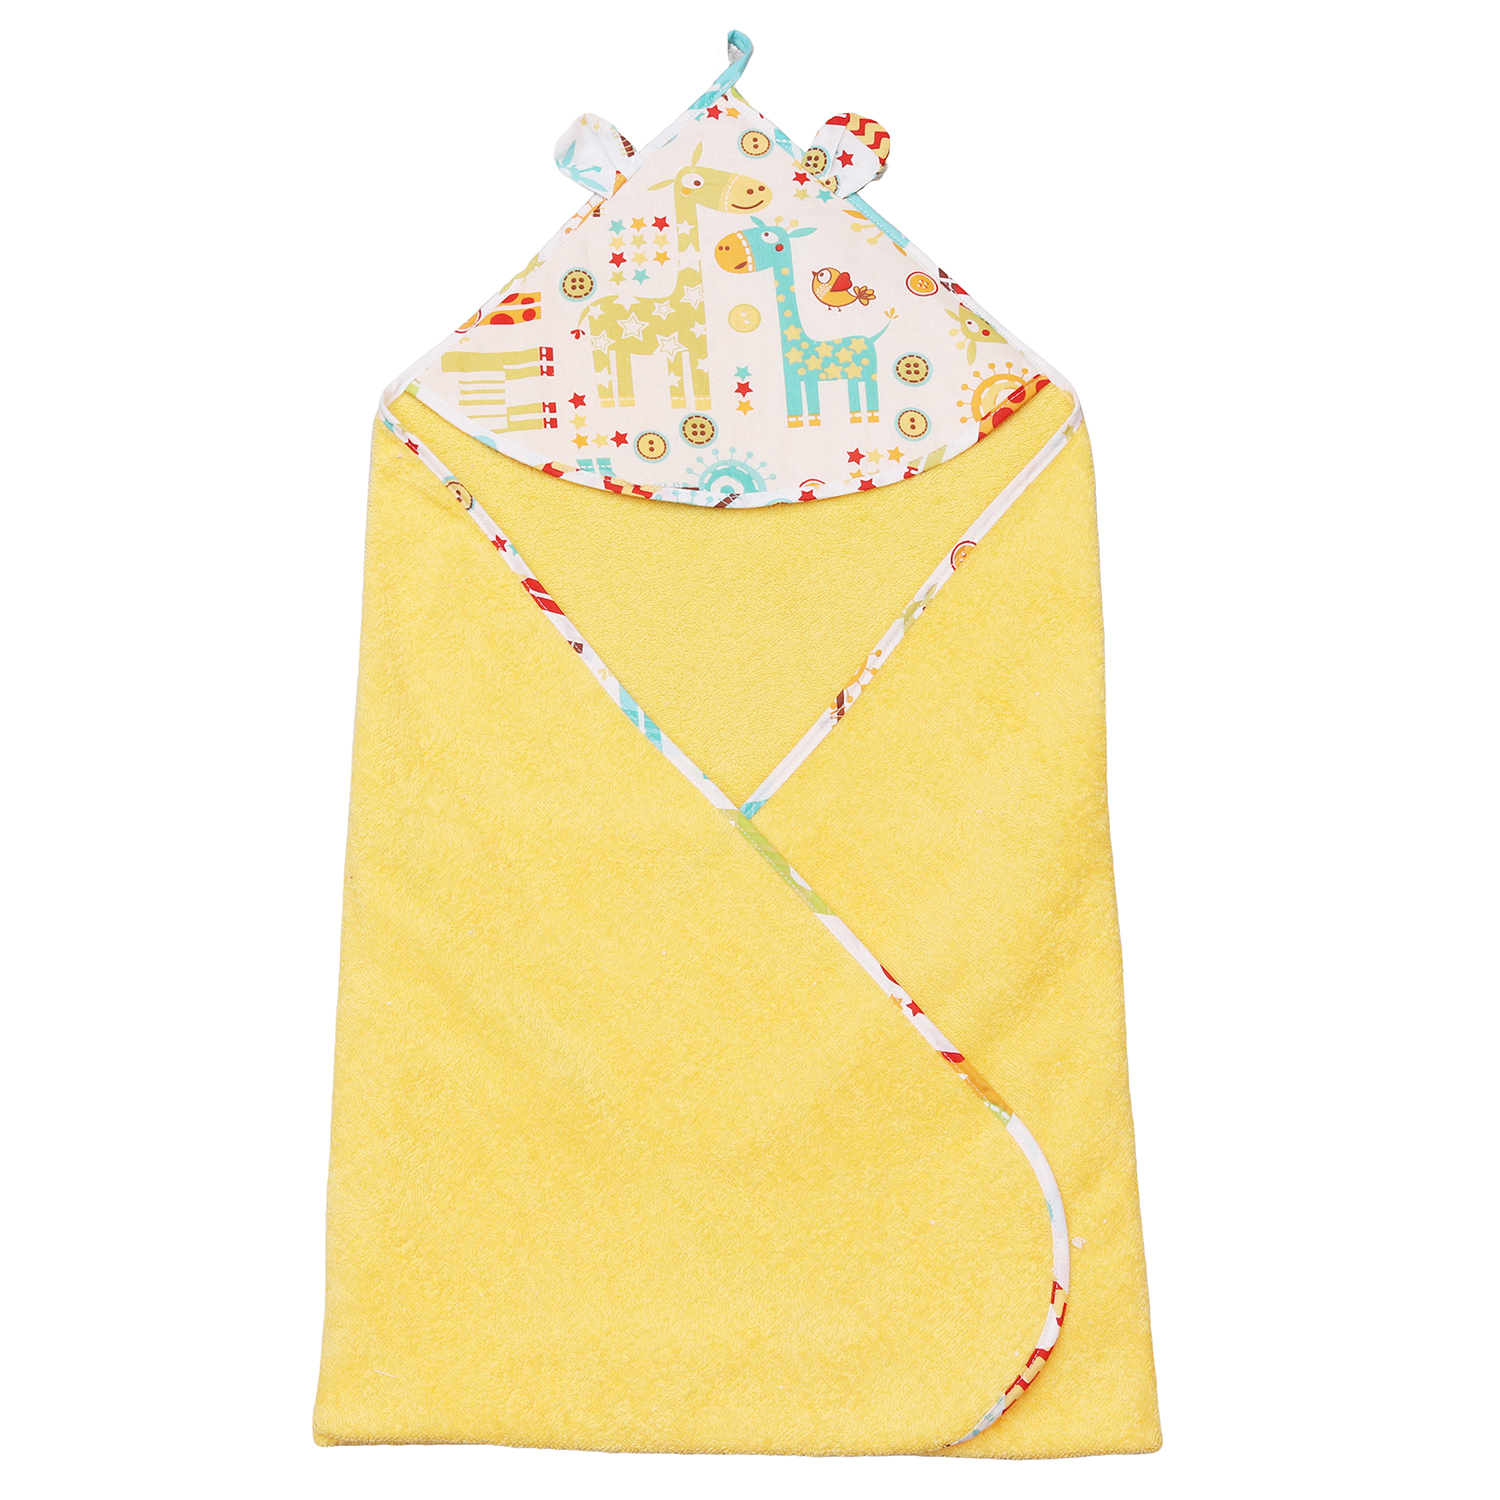 Полотенце детское с уголком AmaroBaby Cute Love Жирафики, 90х90 см croobie полотенце детское с капюшоном 90х90